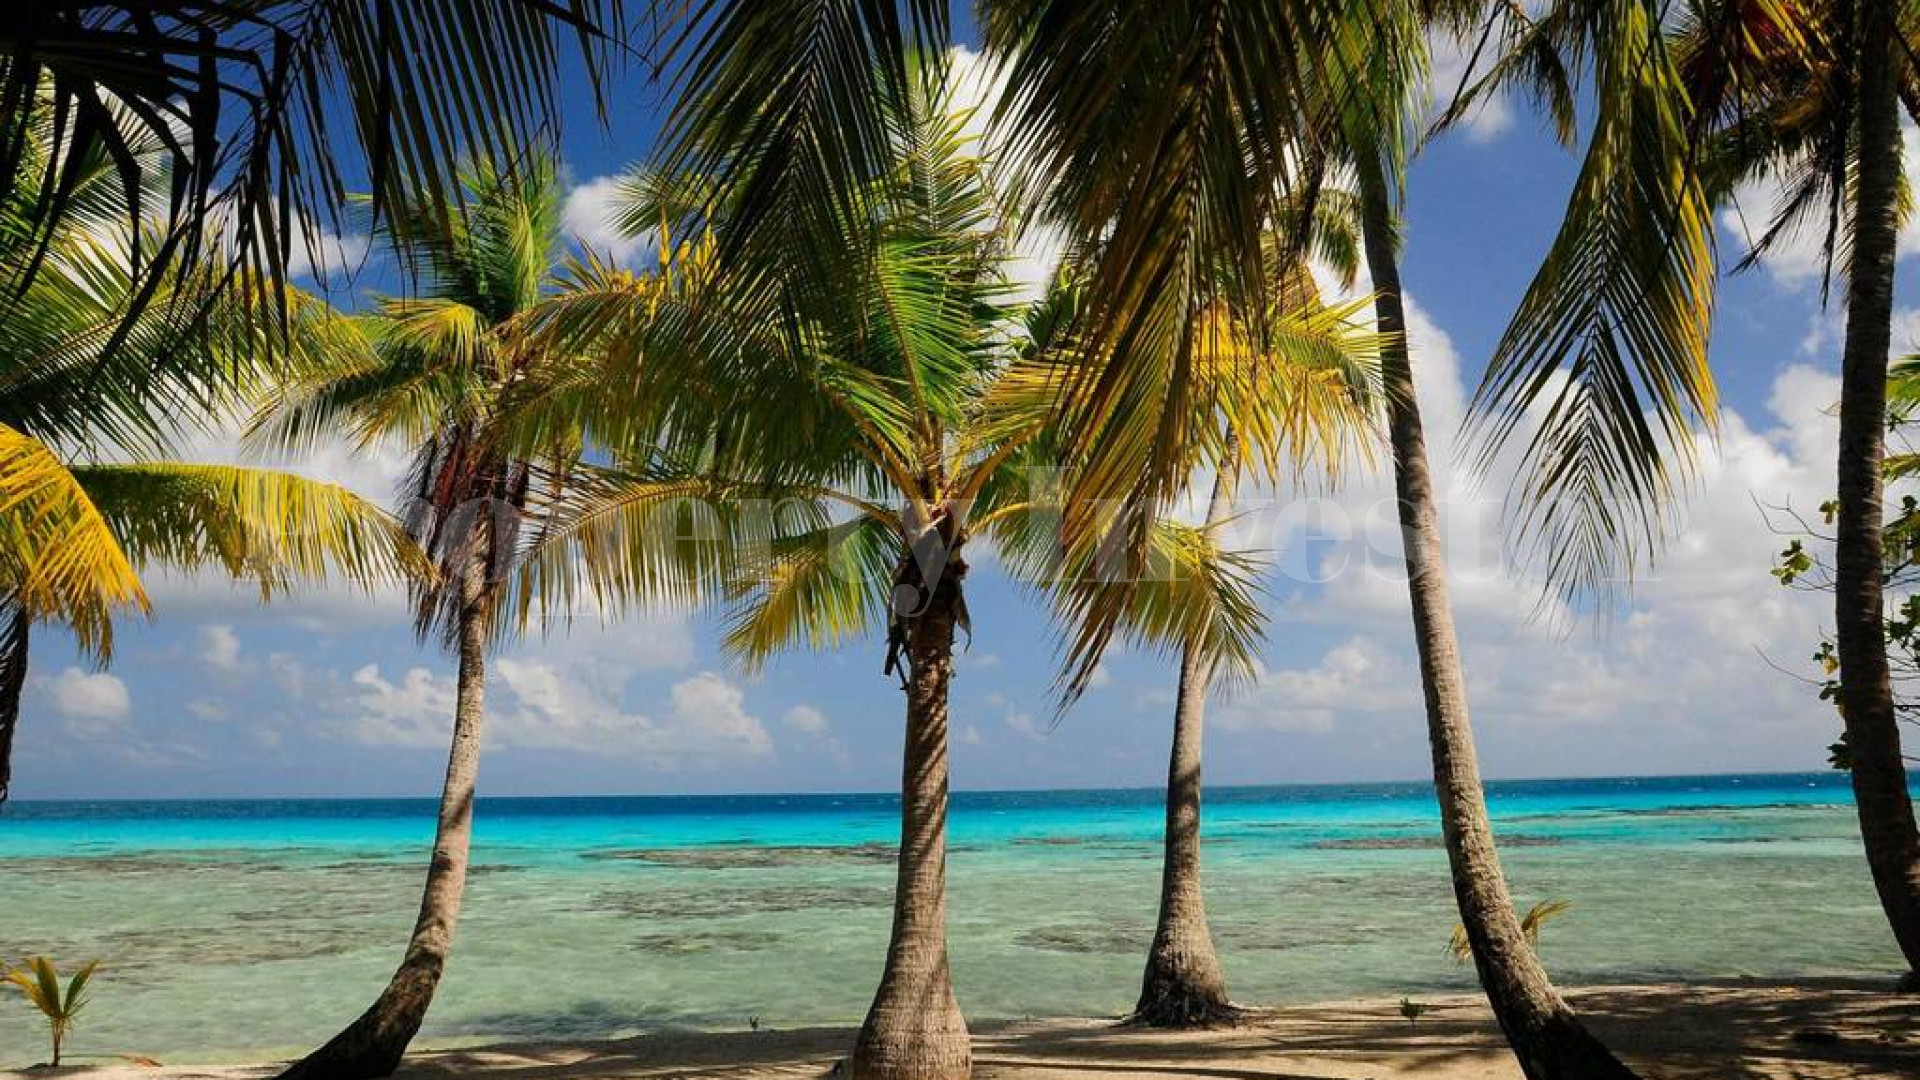 Изумительный остров 3,8 га с резиденцией во Французской Полинезии